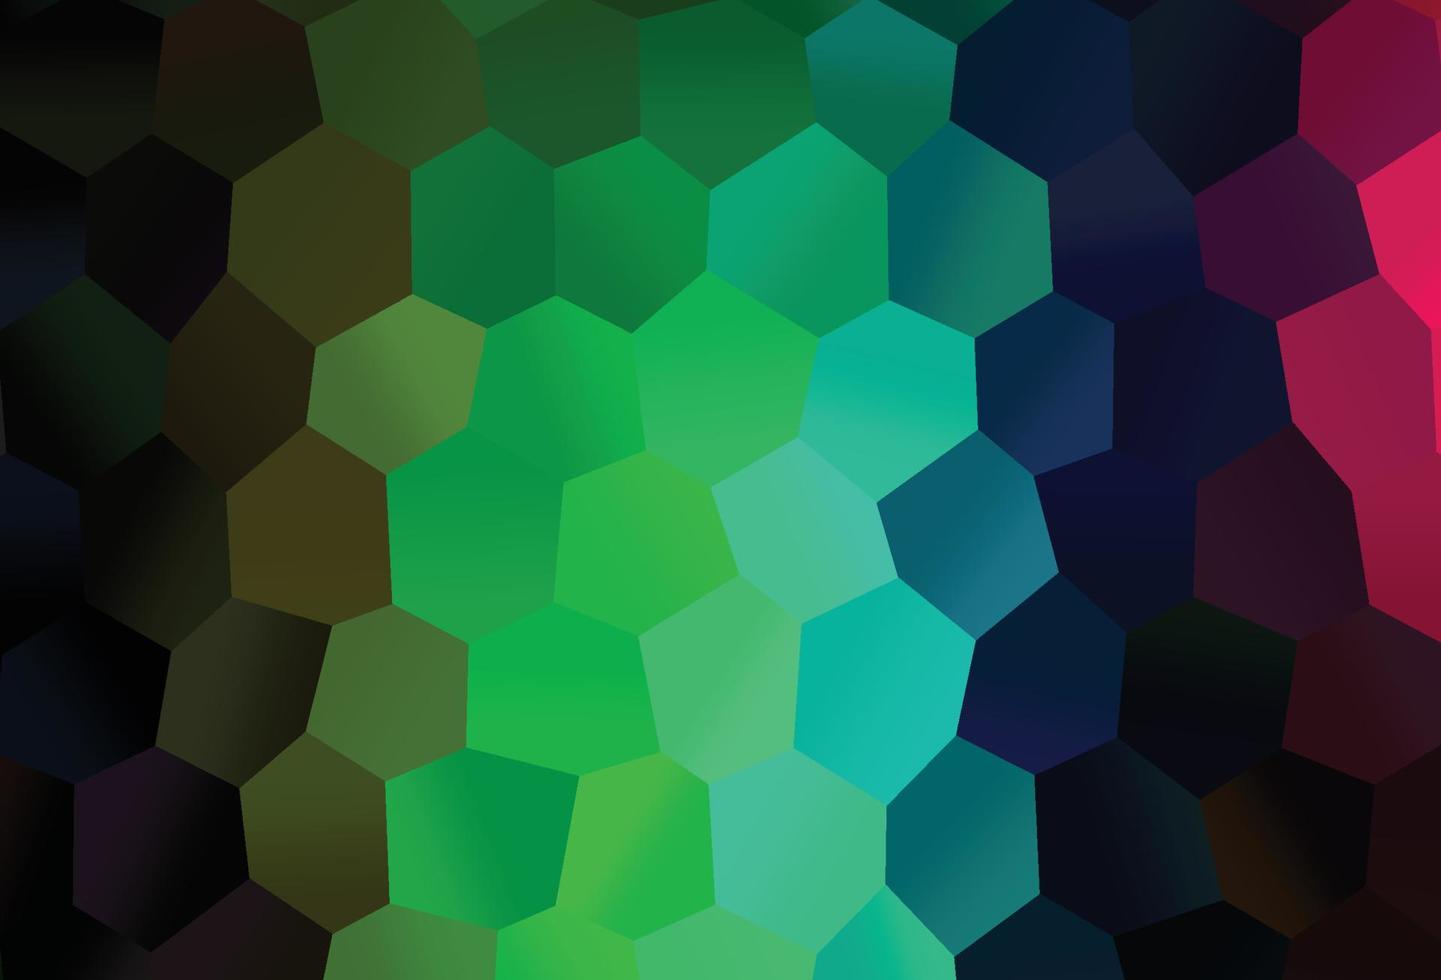 fond de vecteur arc-en-ciel multicolore foncé avec des hexagones.